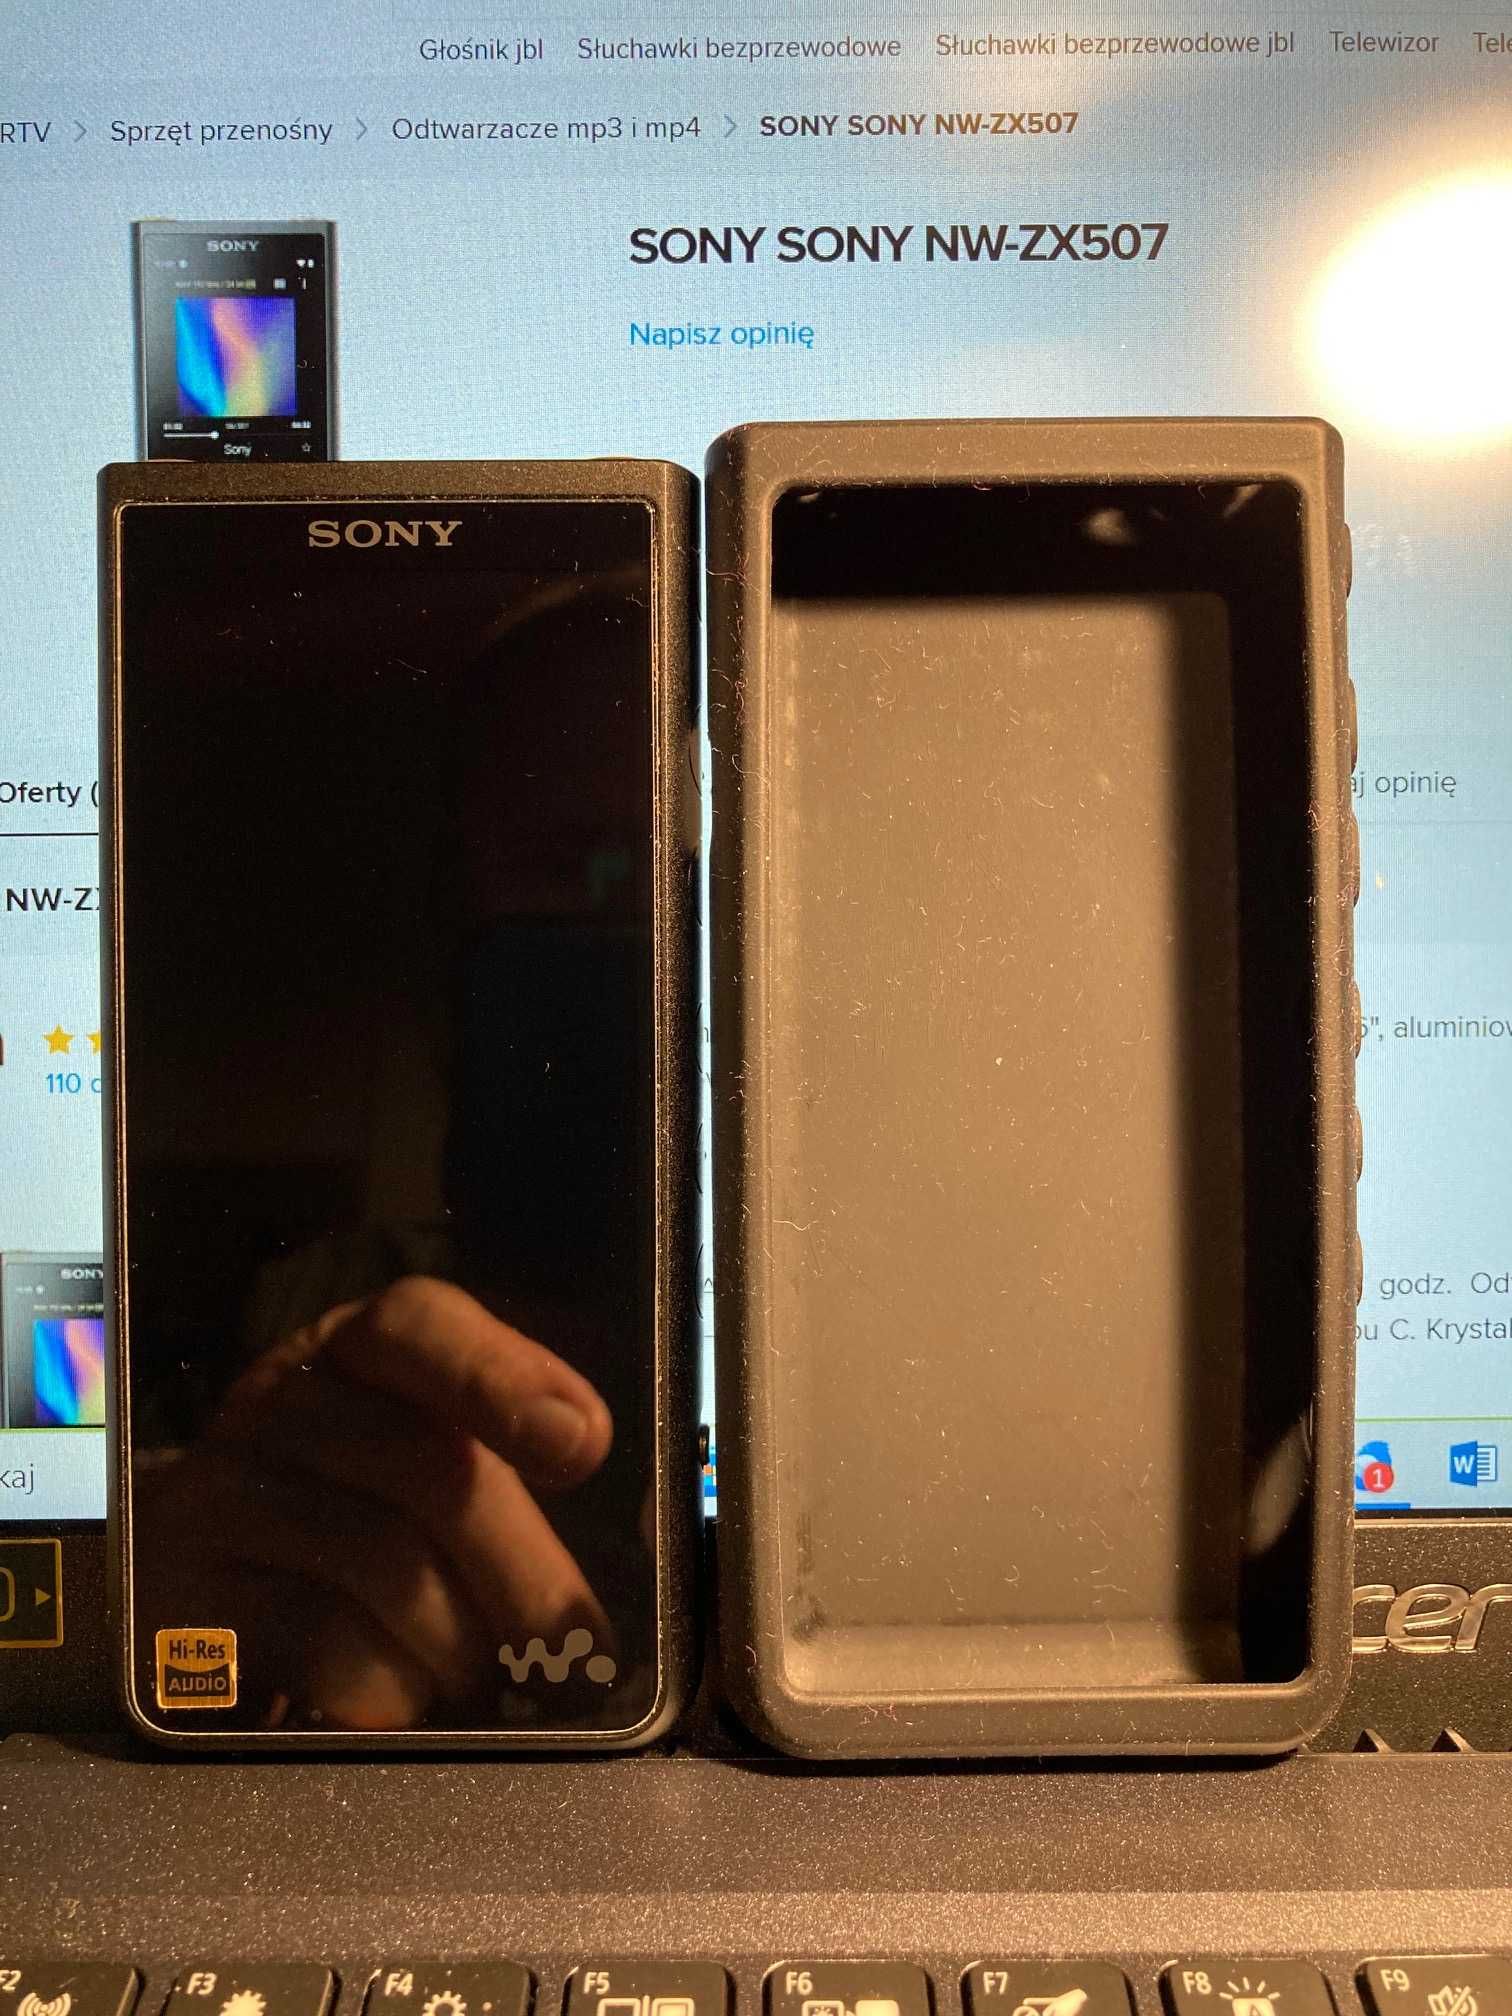 Sony NW-ZX507 Walkman 64 GB, Premium Hi-Res, odtwarzacz mp3/mp4